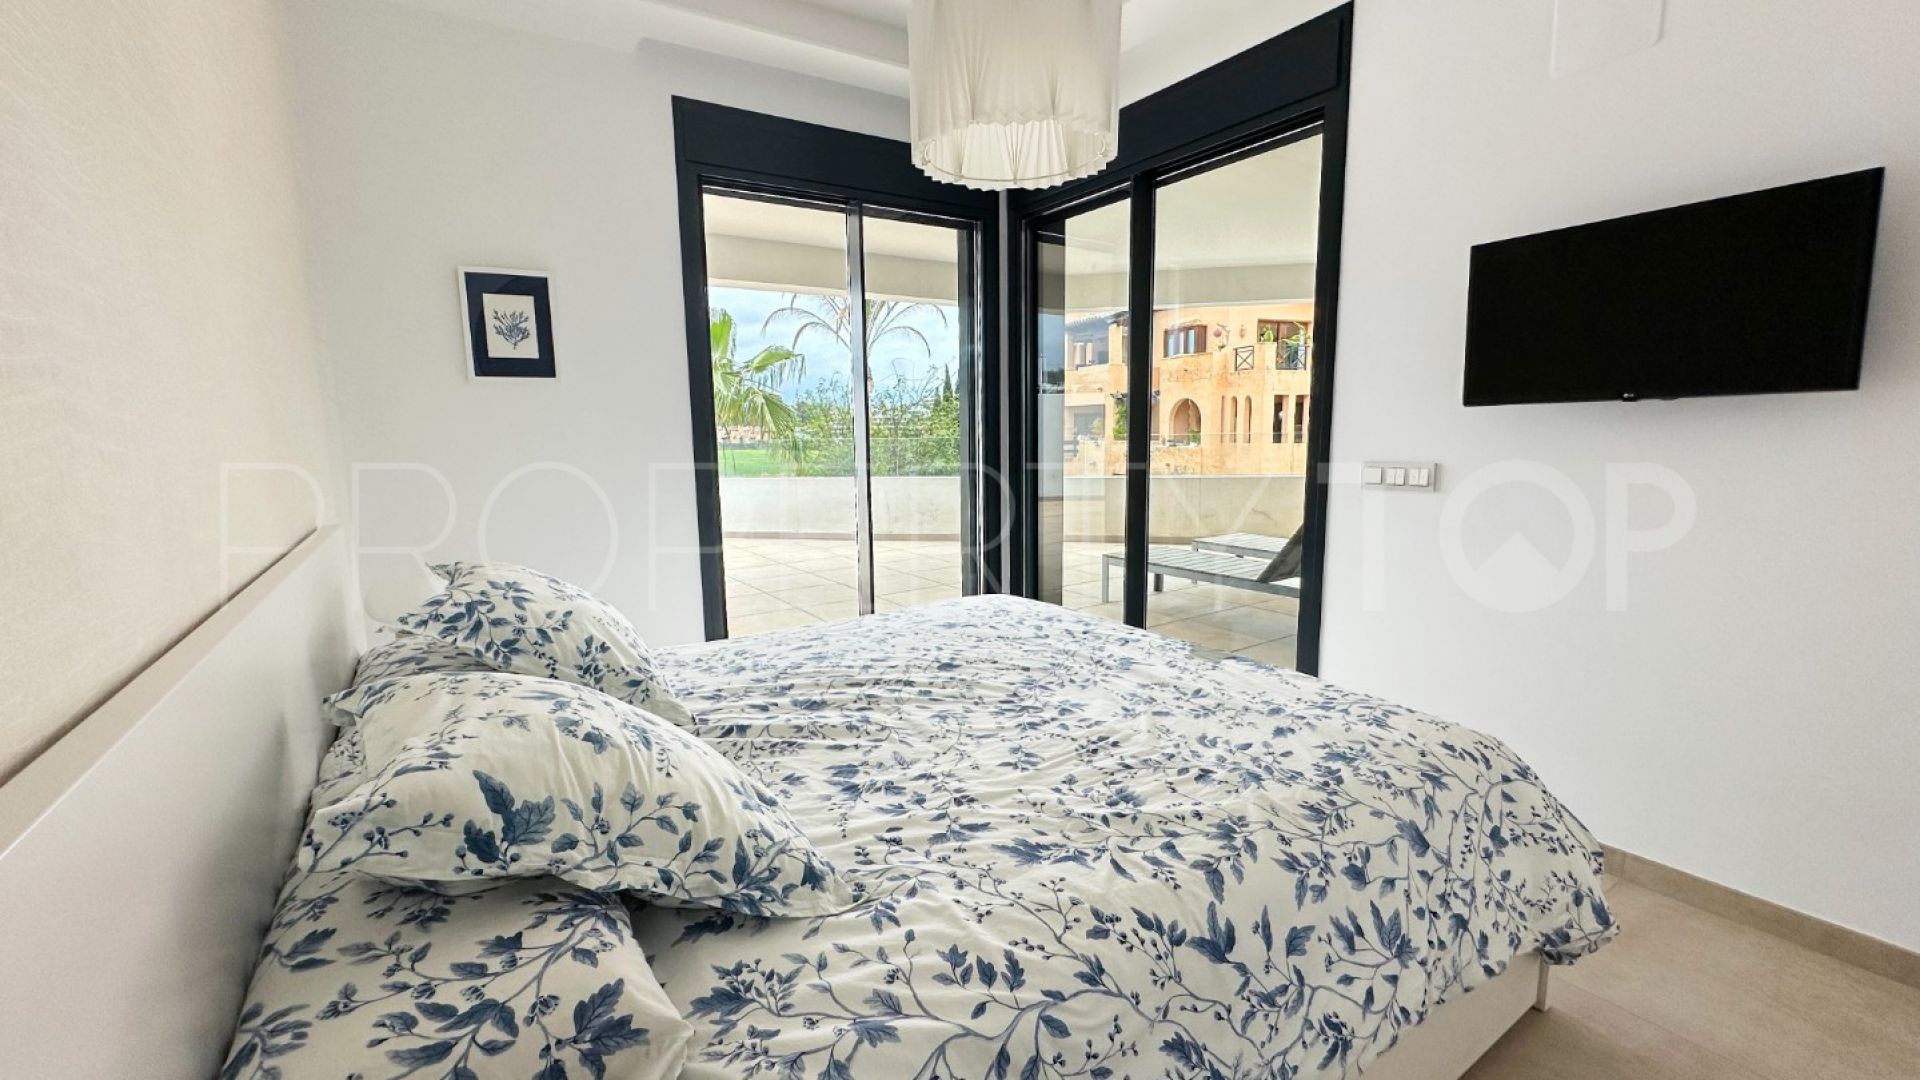 For sale apartment with 3 bedrooms in El Campanario Hills